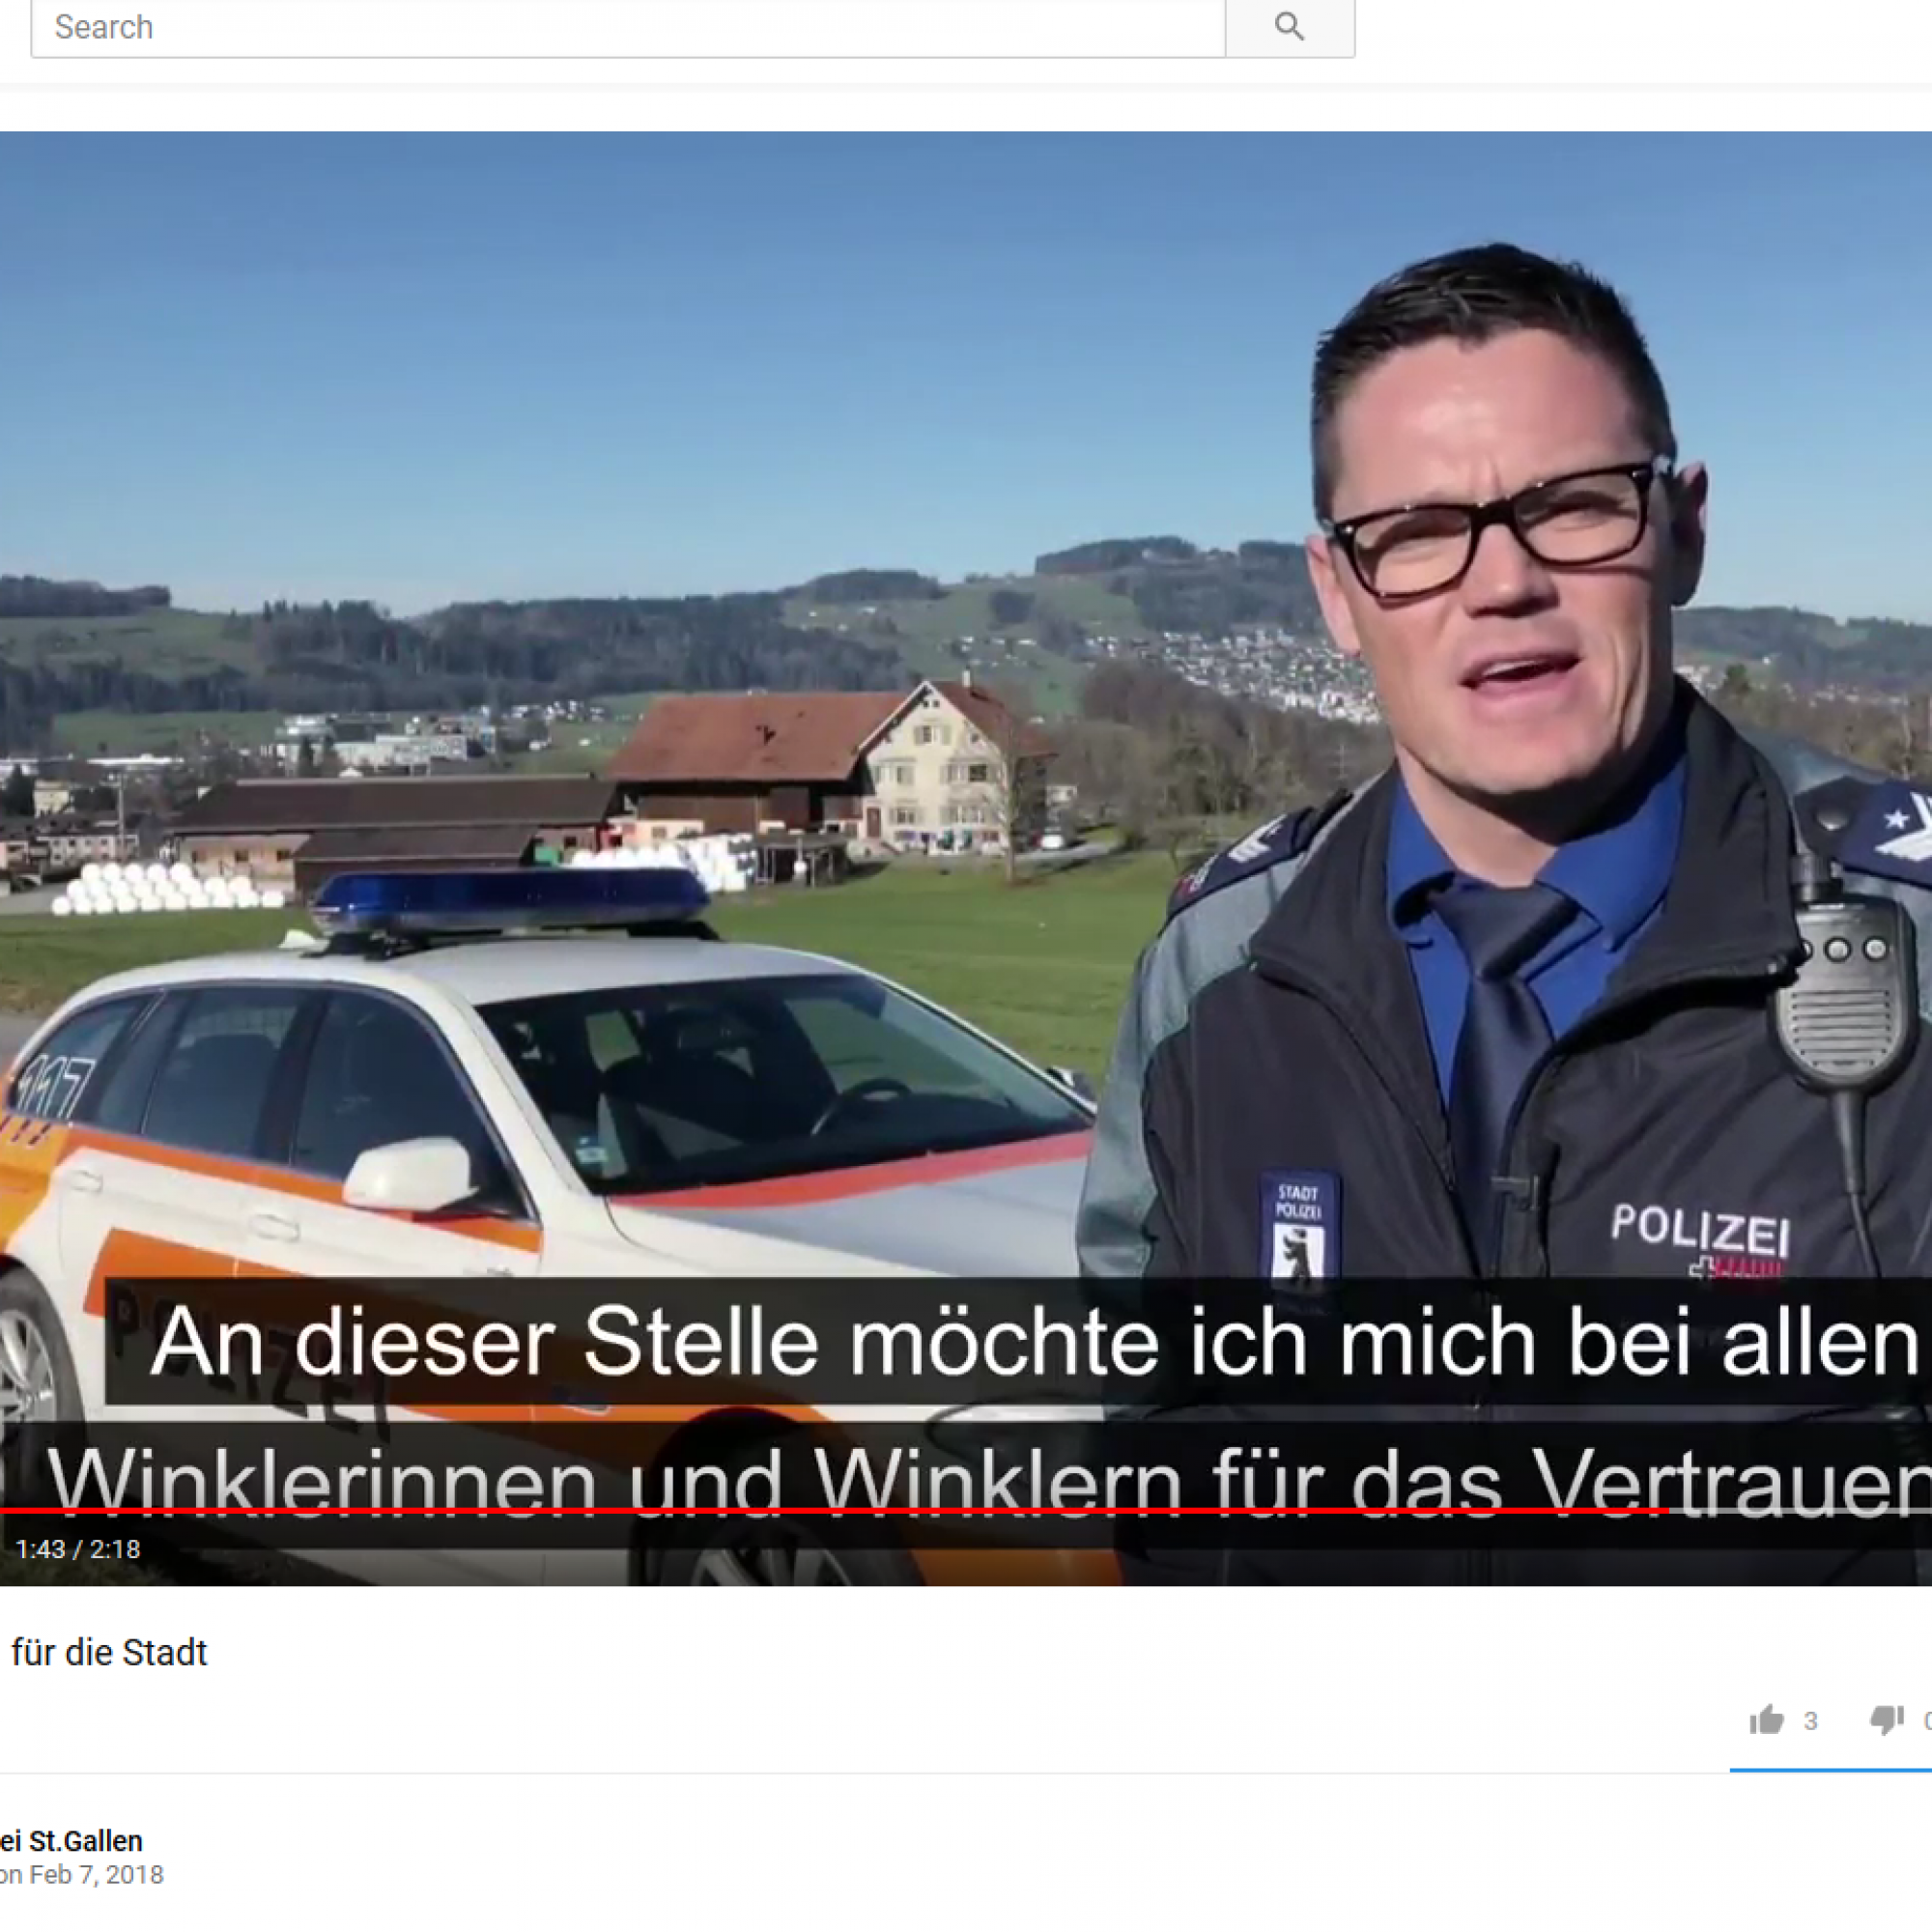 Die Stadtpolizei St. Gallen zeigt sich multimedial, mit Blog und Youtube-Videos (Screenshot).